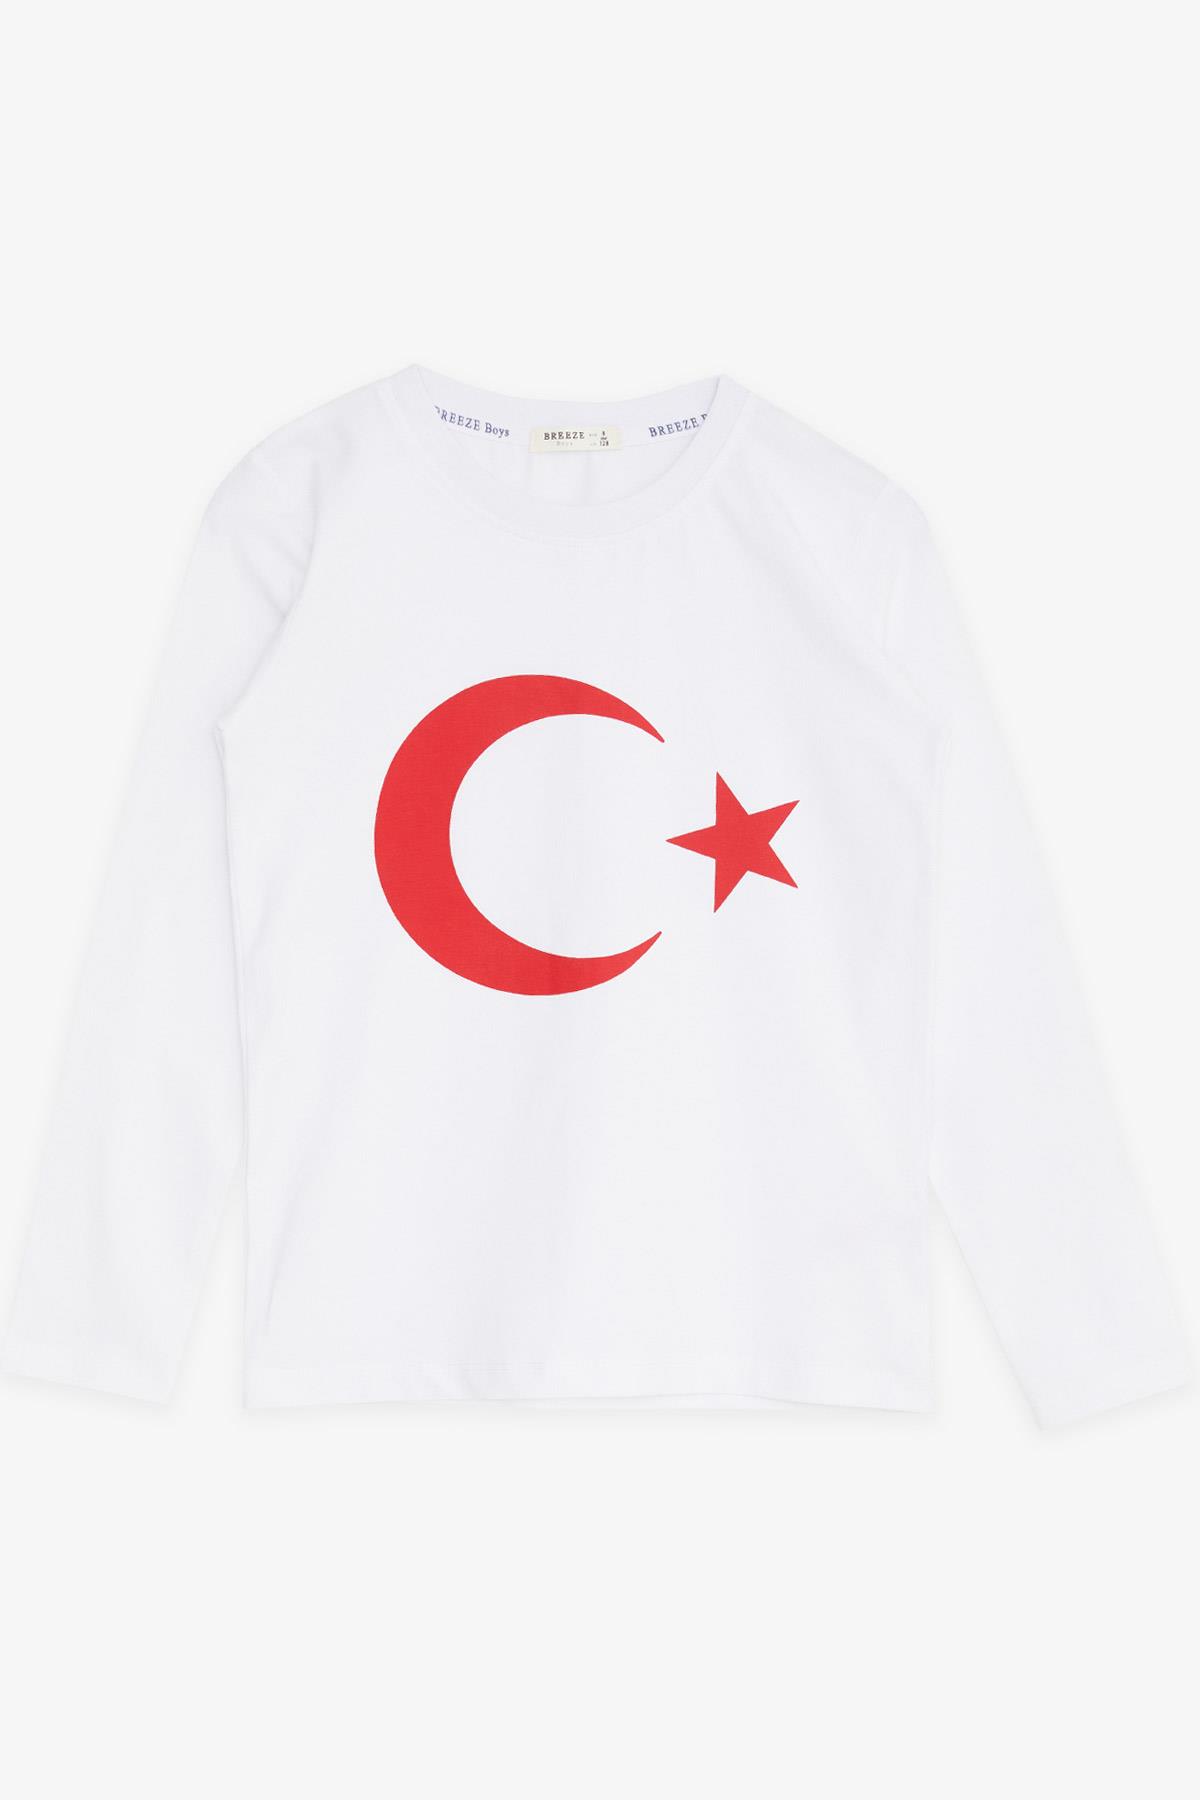 Türk Bayrak Baskılı Kız Çocuk Uzun Kollu Tişört Modeli | Beyaz 5-14 Yaş